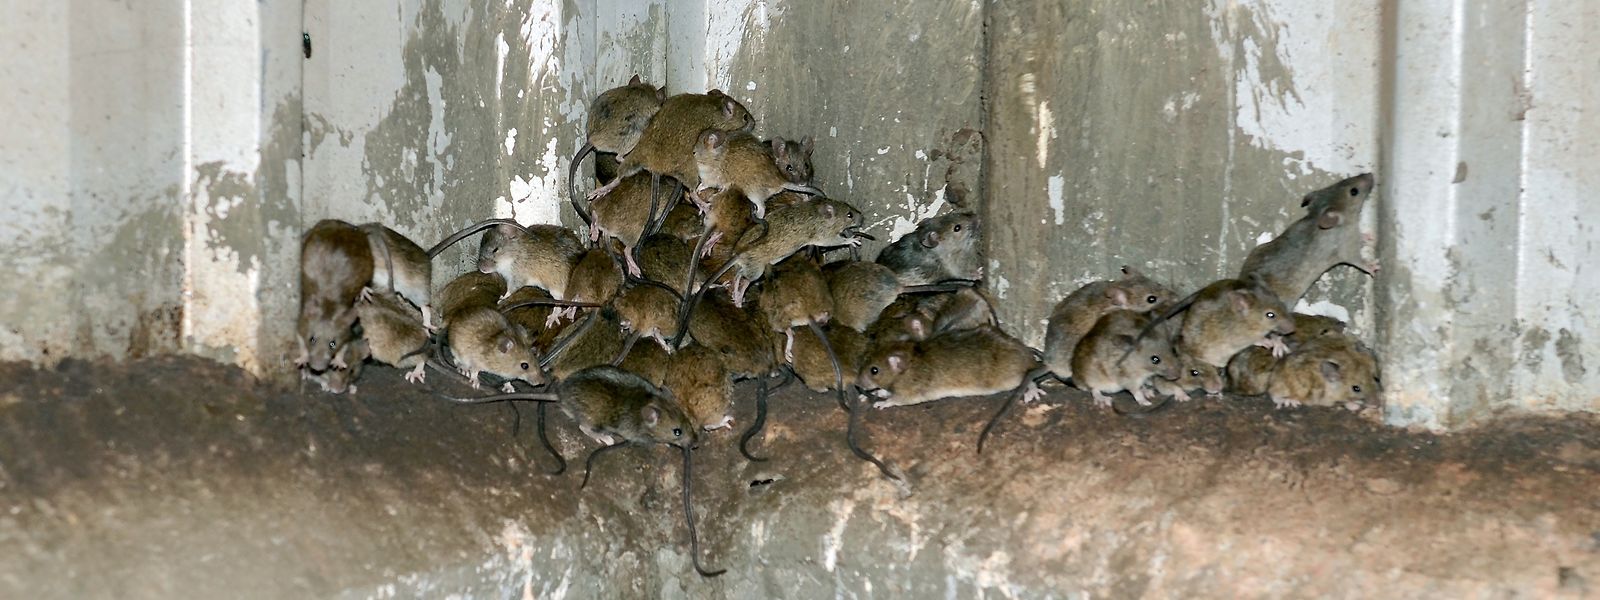 Die Mäuse vernichten in kurzer Zeit die Vorräte der Landwirte.